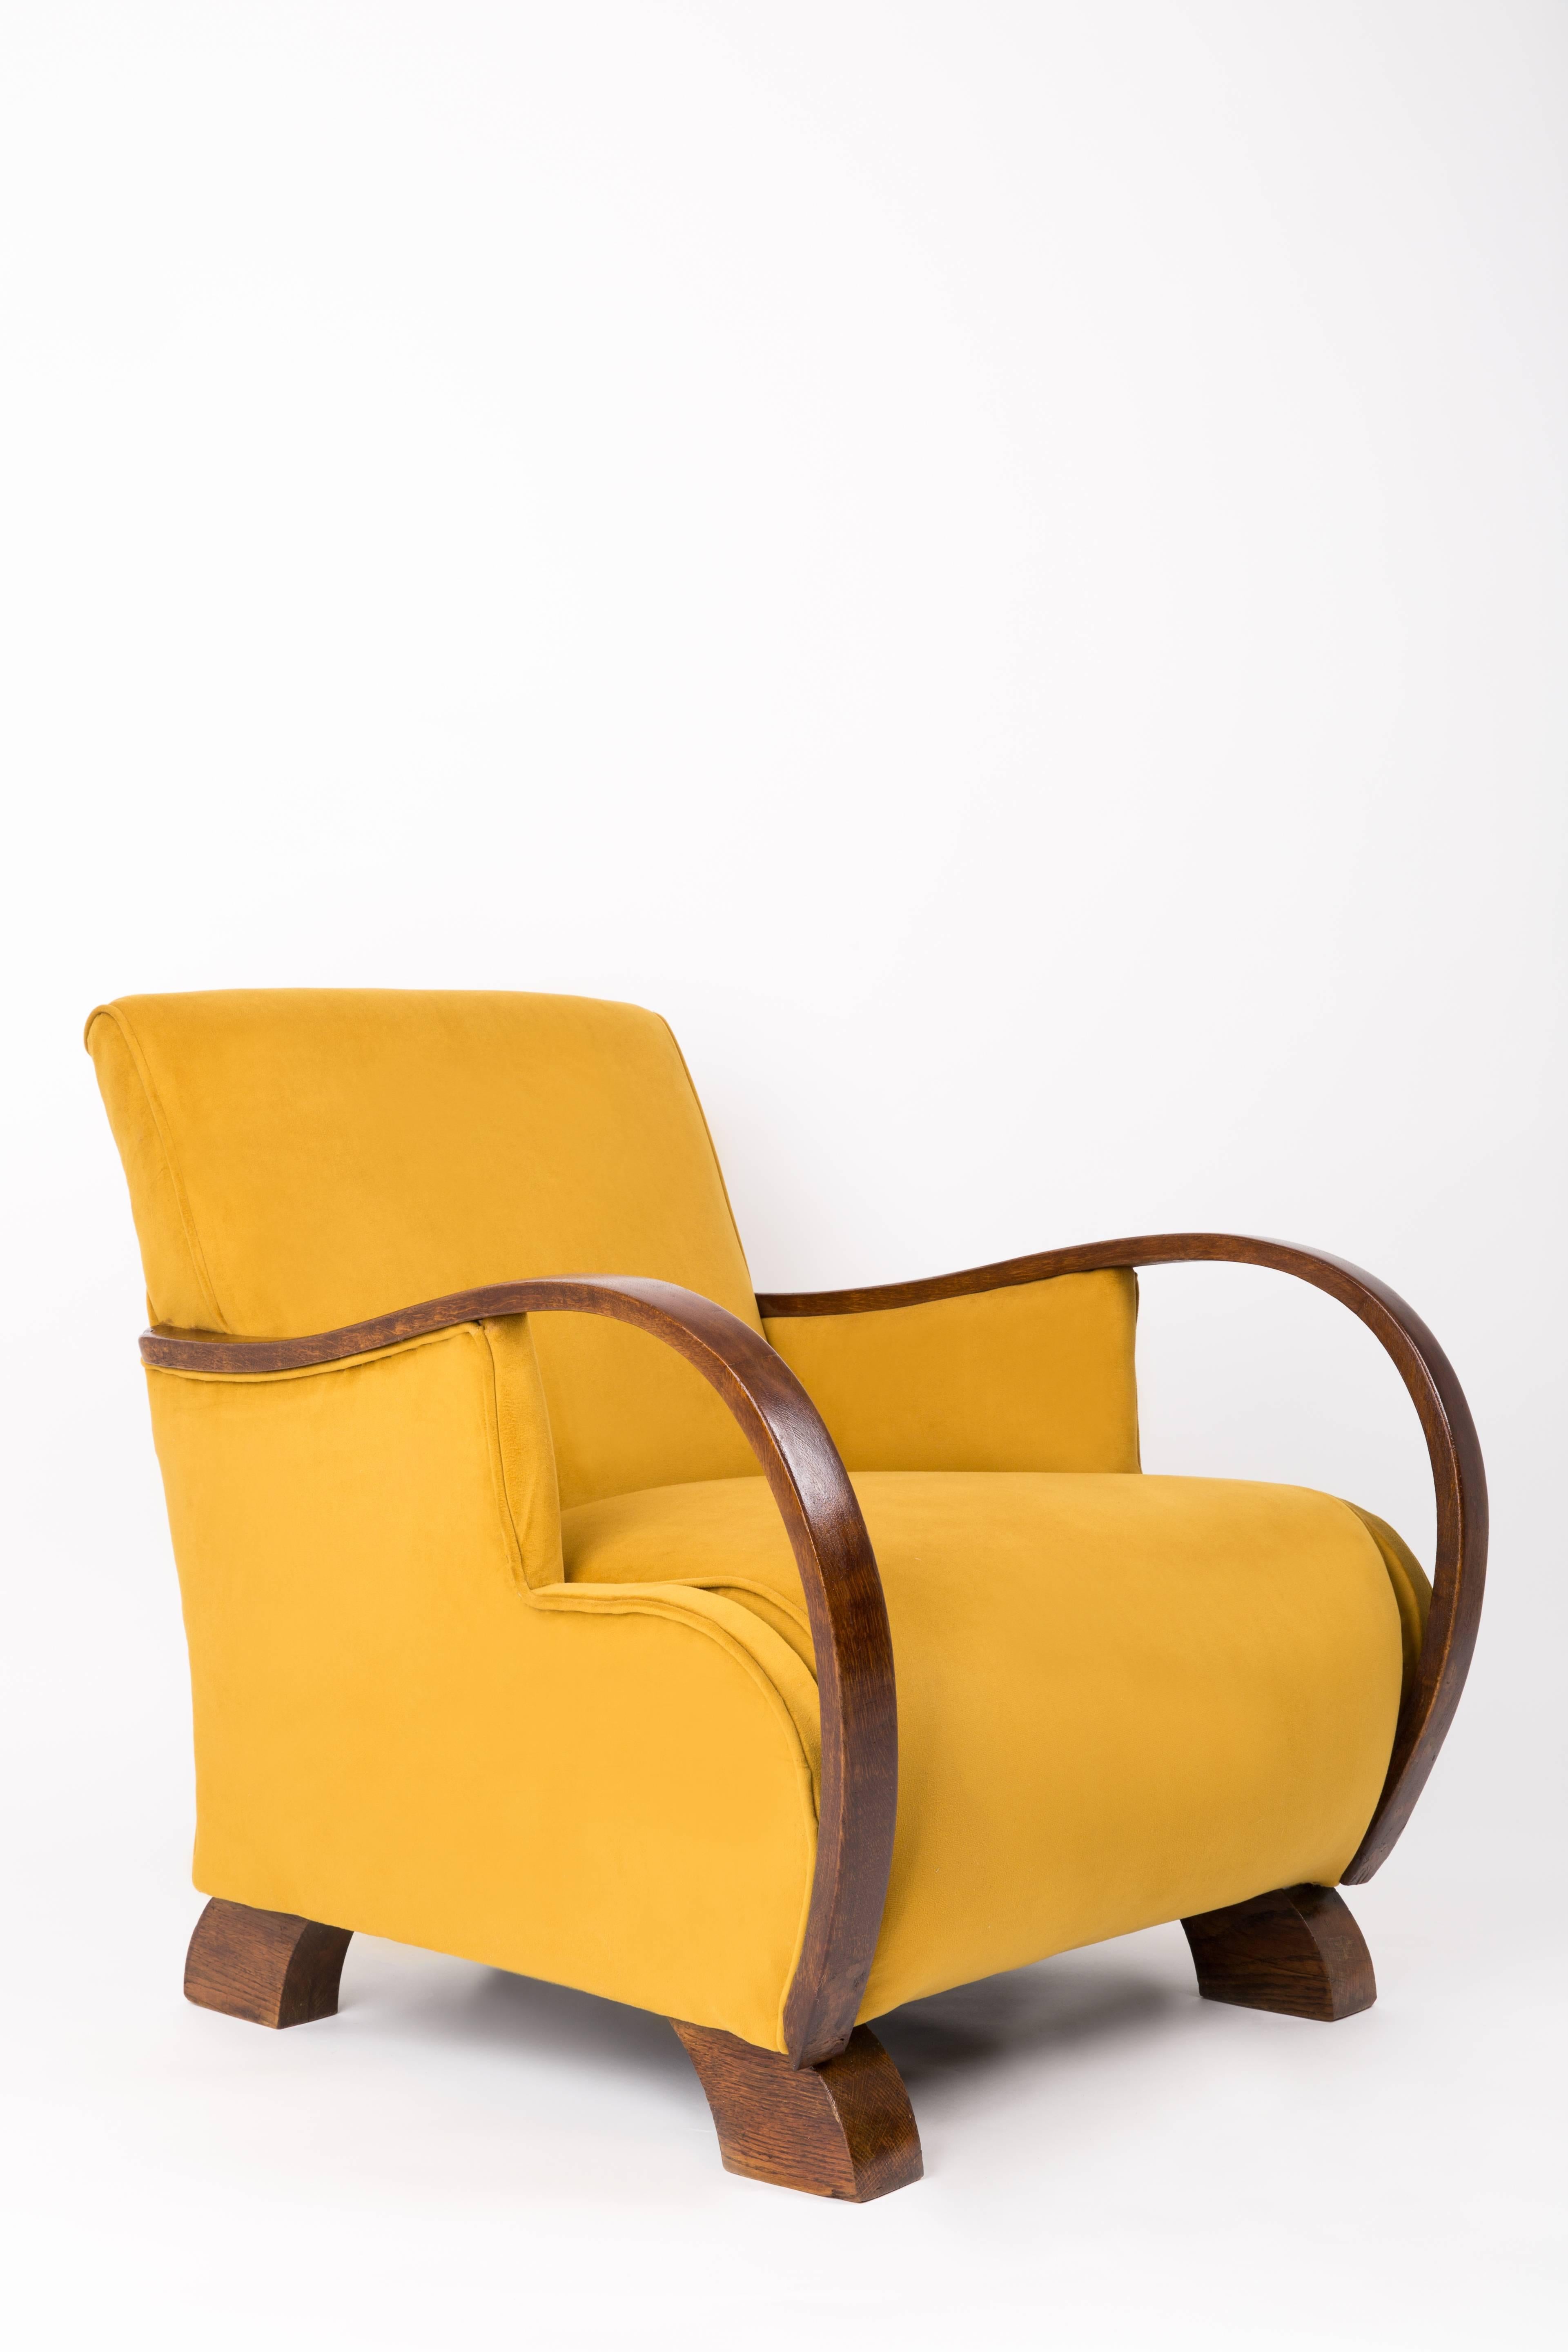 Sehr bequeme Sessel aus den 1920er Jahren. Hergestellt wahrscheinlich in Russland. Ein schöner Vertreter des Art déco. Möbel mit einer massiven Konstruktion, haben einen bequemen Sitz auf Federn. Der Sessel wurde komplett geschreinert und neu